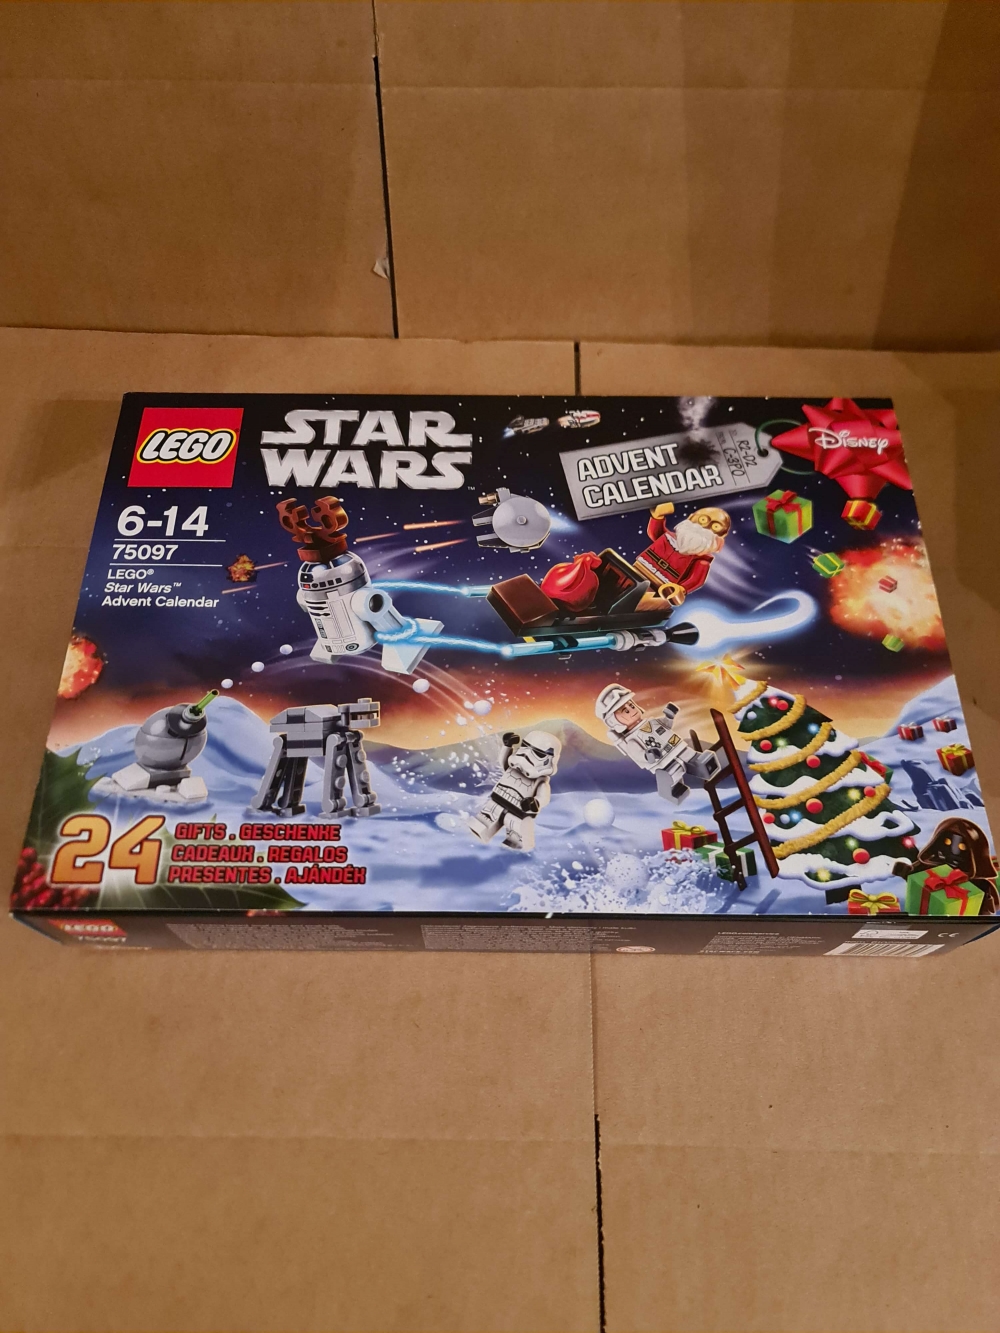 Sett 75097 fra Lego Star Wars serien.
Komplett. Luke 1-5 er åpnet. Resten uåpnet. Lego fra luke 1-5 ligger i lukene.